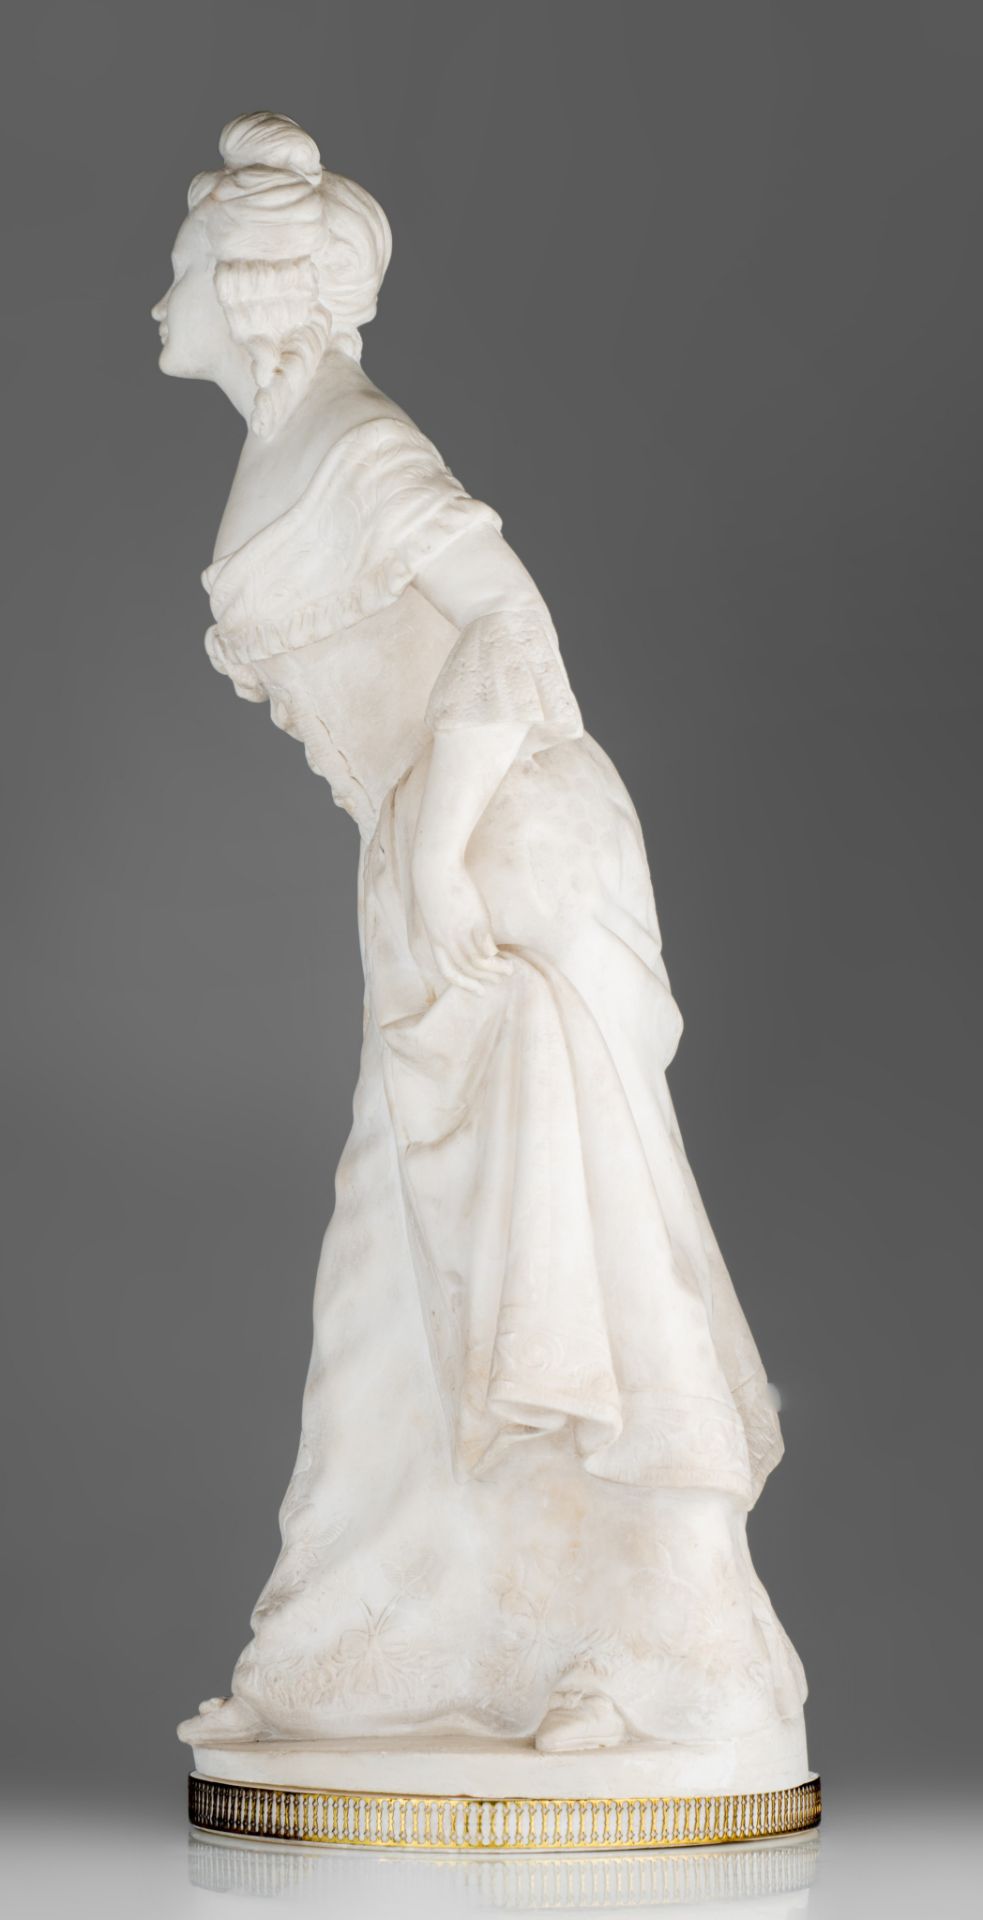 Dominique Alonzo (act. 1910-1930), 'la Révérence', Carrara marble, H 67 cm - Image 11 of 16